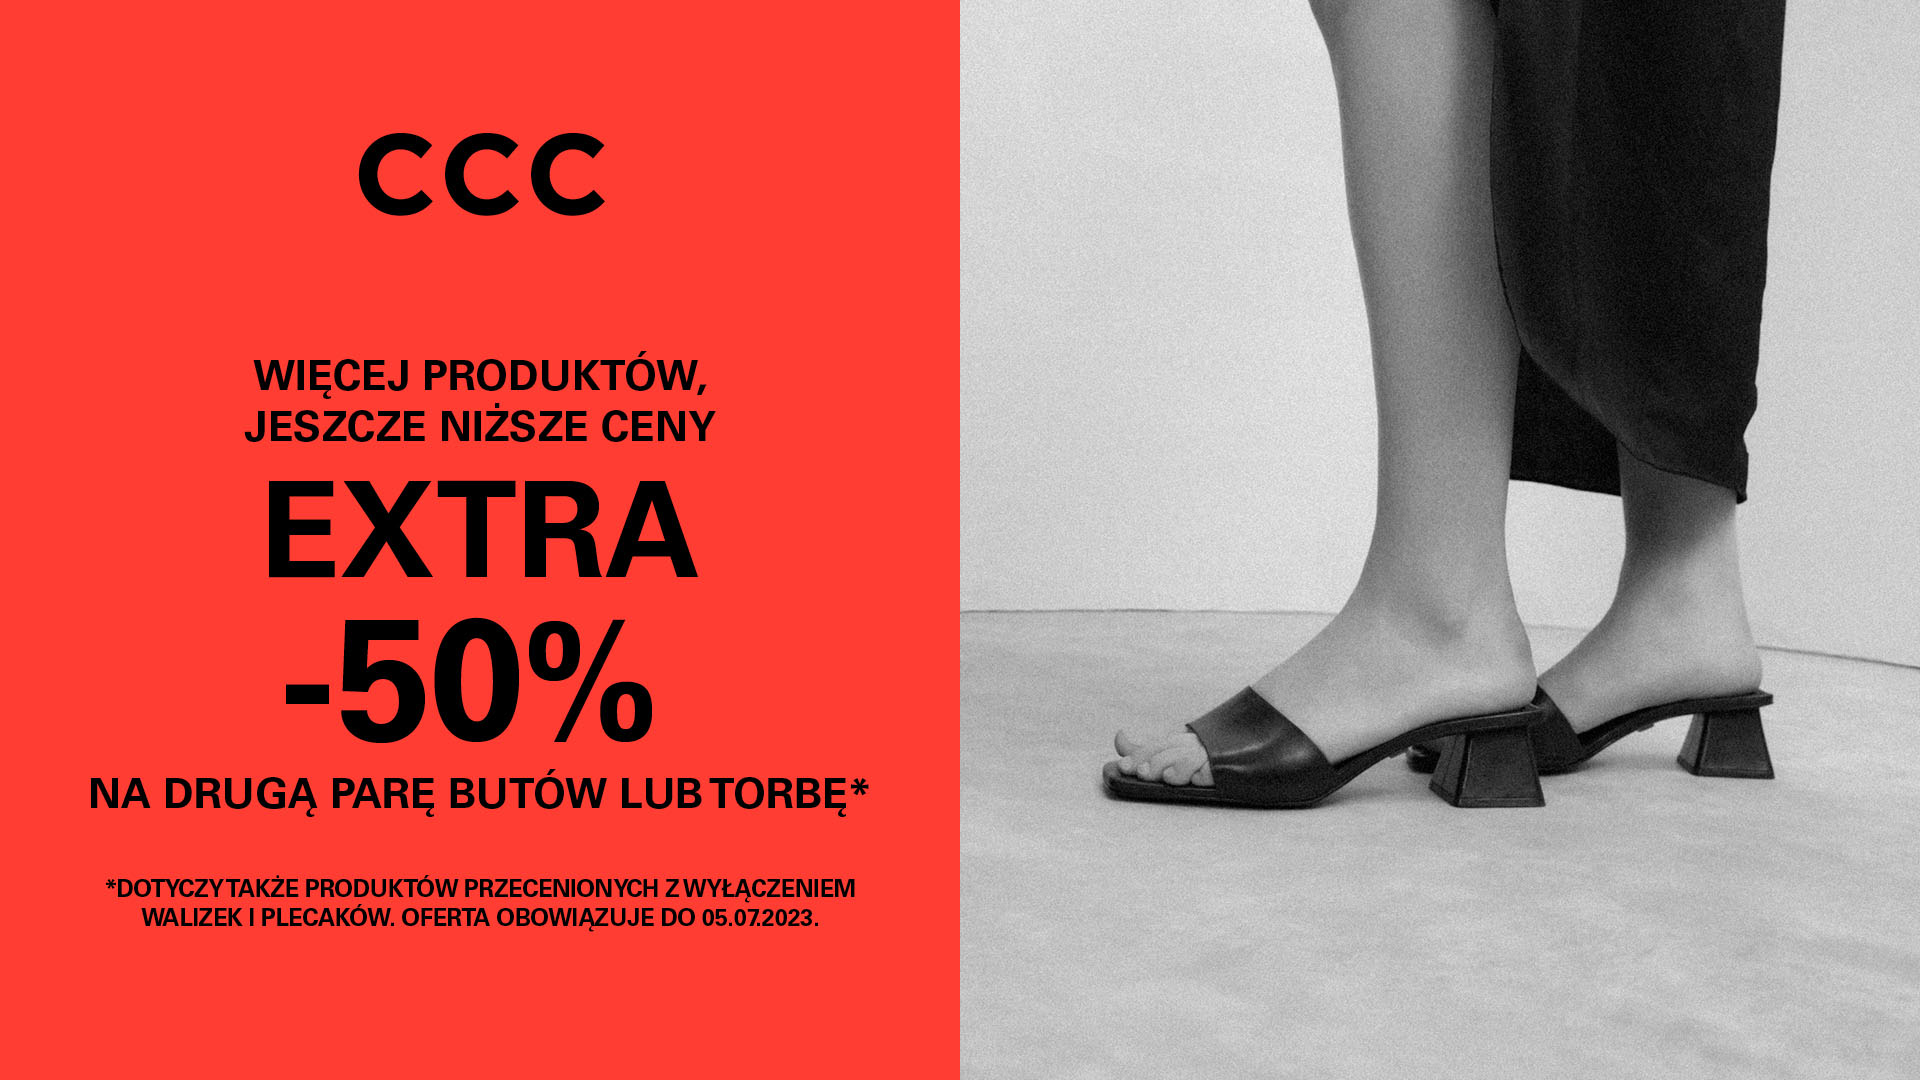 Extra -50% na drugą parę butów lub torbę w CCC!